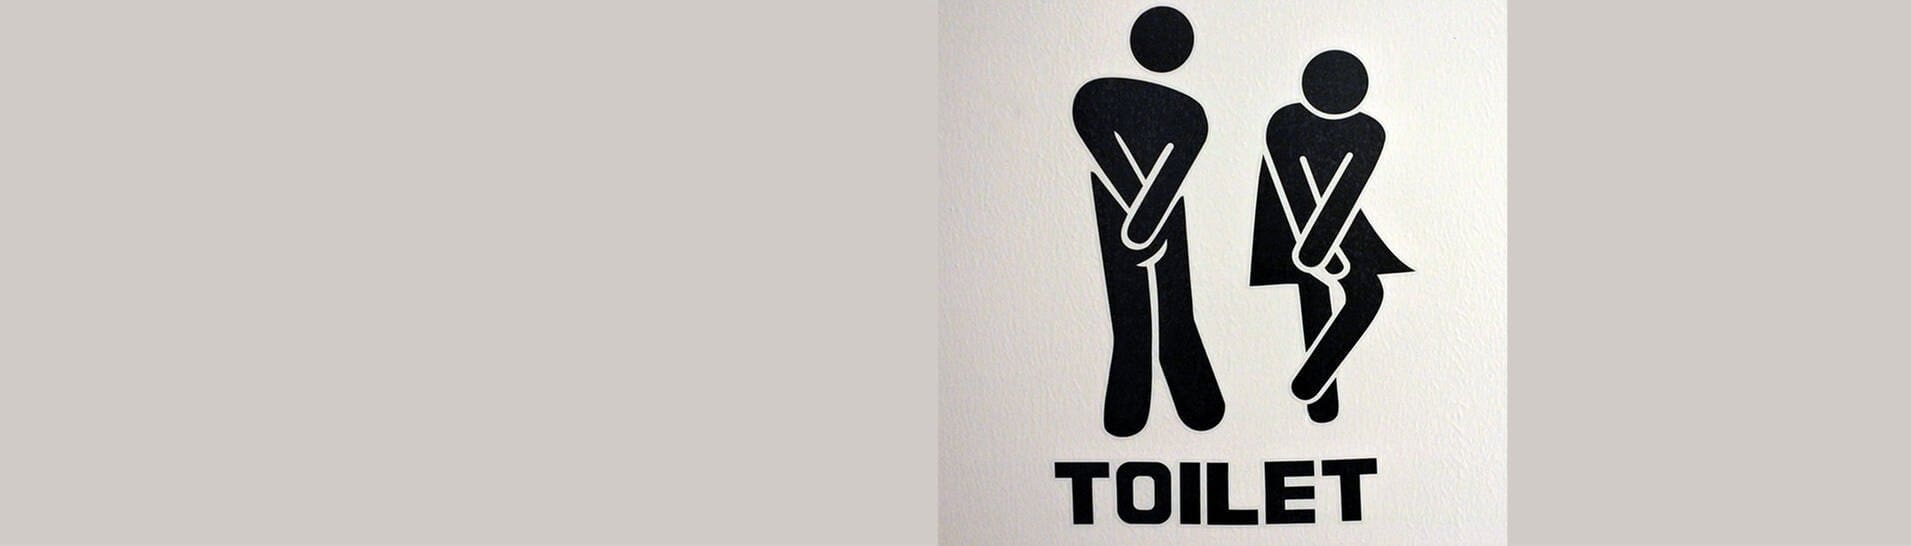 Klo-Schild: Dringend zur Toilette!